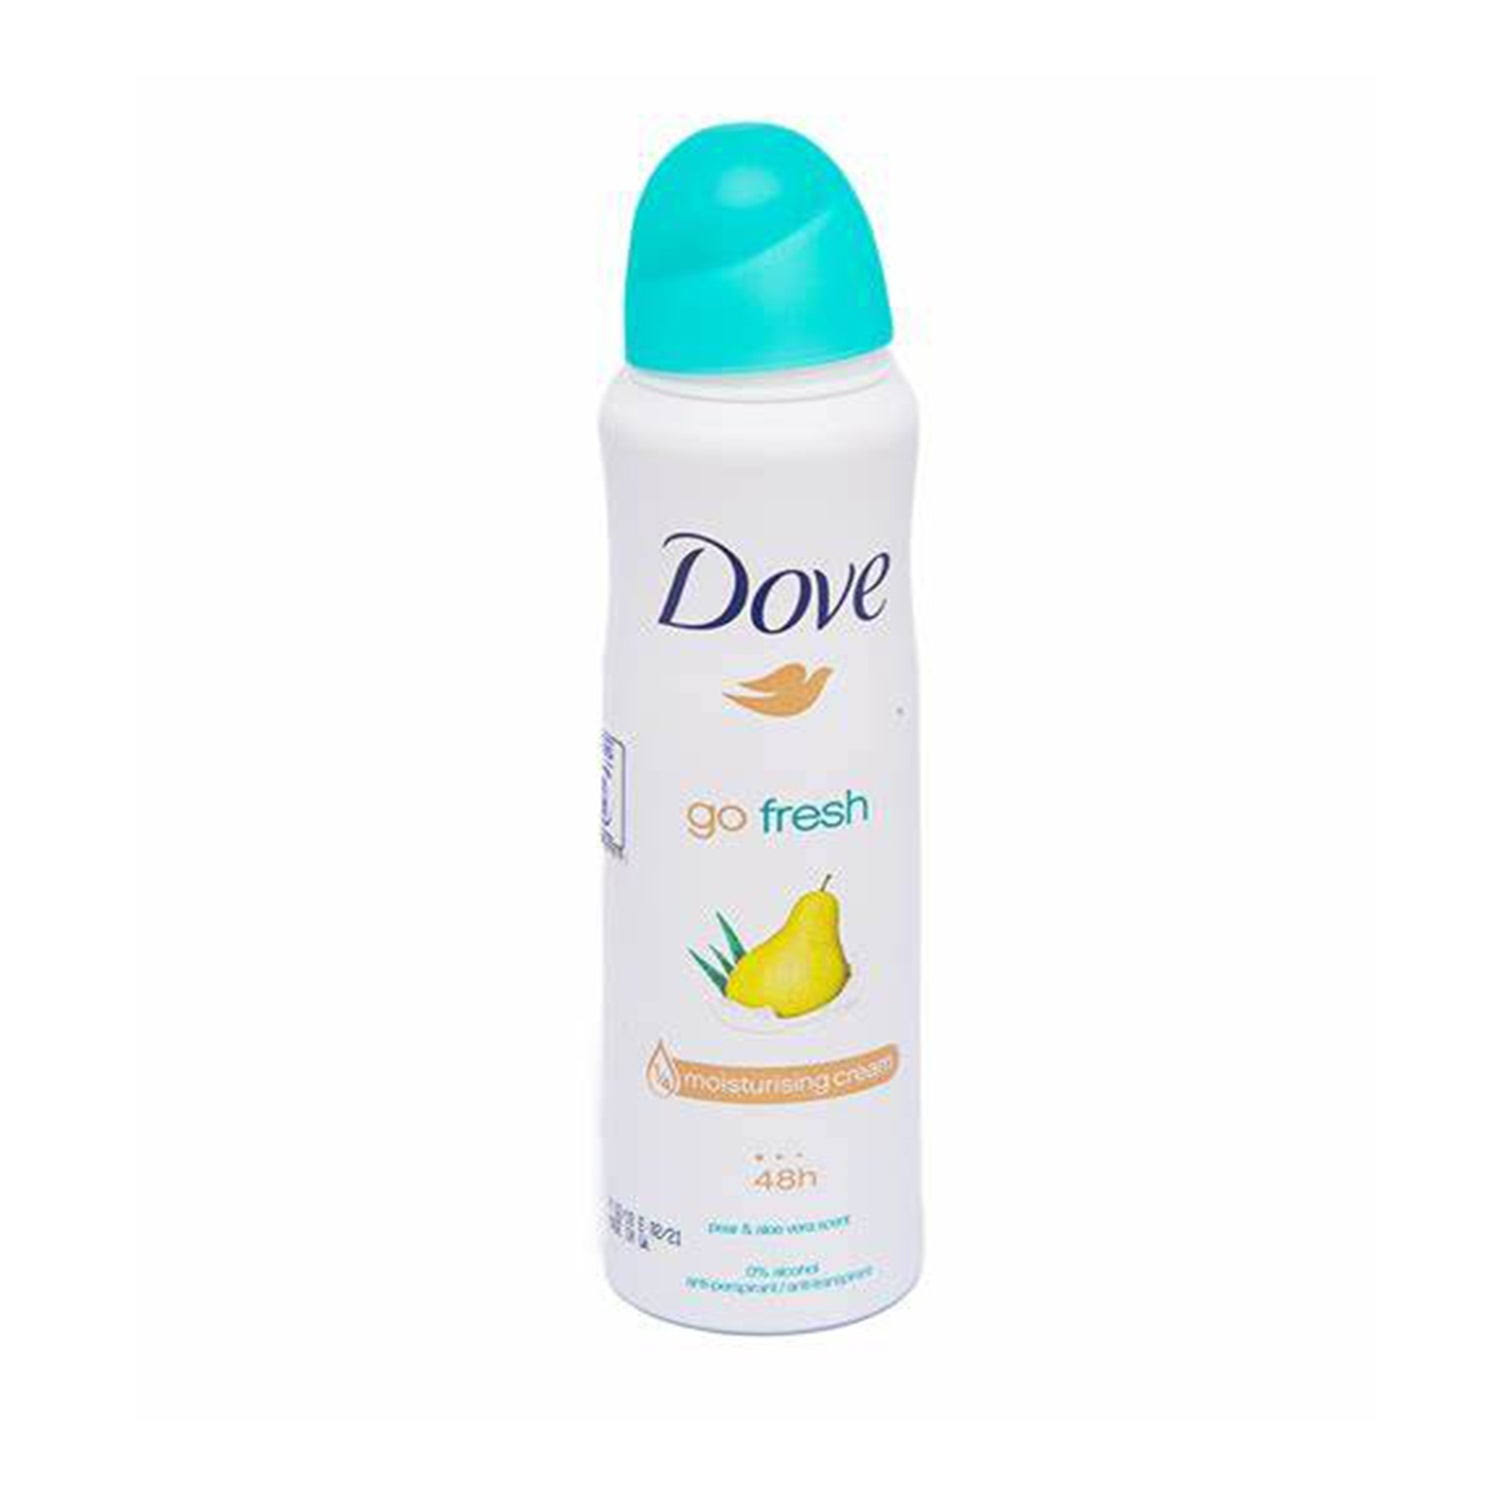 Dove Pear and Aloe Vera Anti-perspirant Deodorant - 250ml